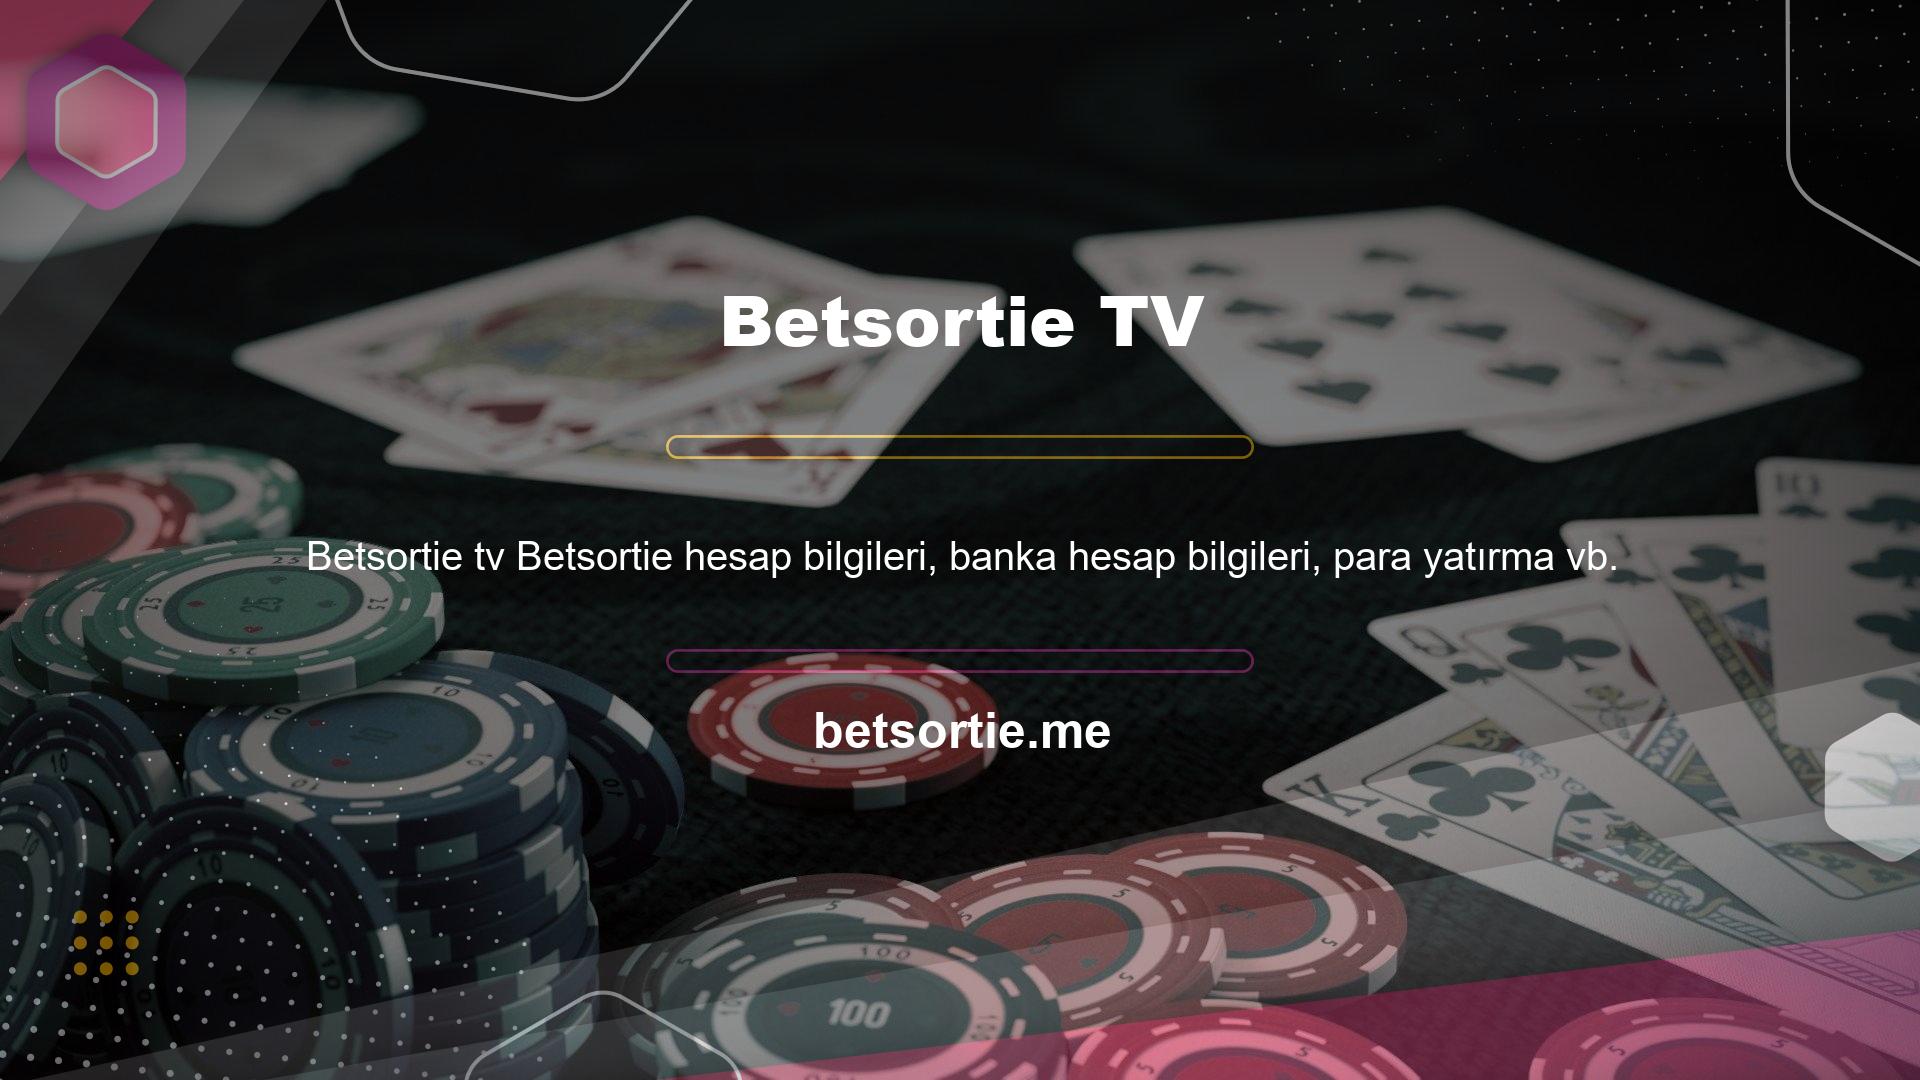 ile ilgili sorularınız için Betsortie TV canlı desteğine WhatsApp veya e-posta yoluyla ulaşabilirsiniz